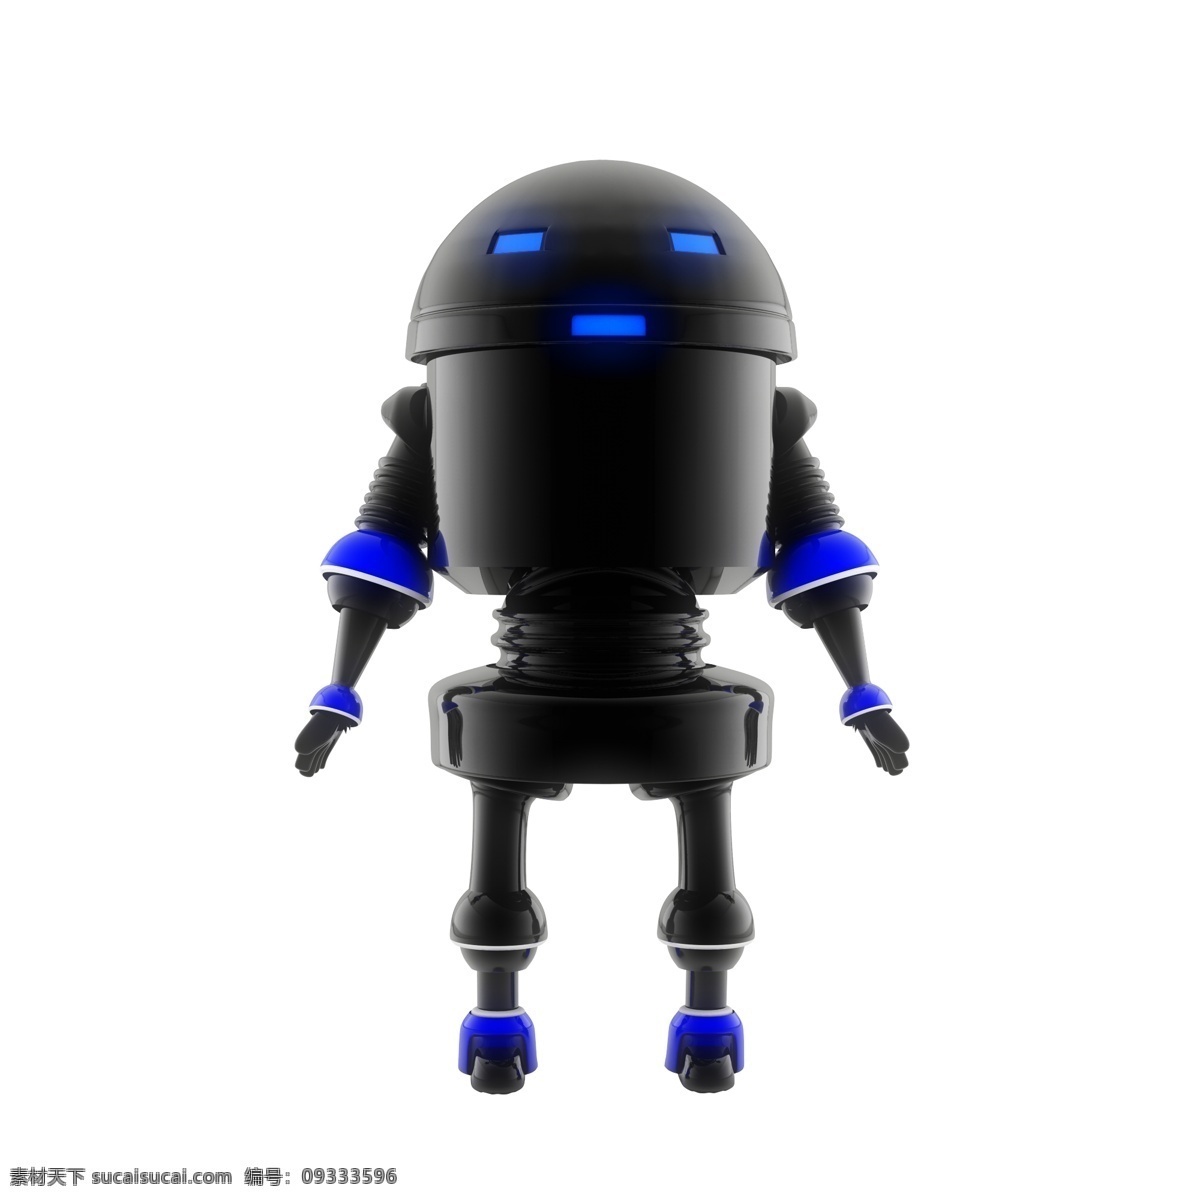 高清 3d 质感 立体 黑色 科技 感 人工智能 机器人 黑色机器人 高科技机器人 黑色质感 科技风质感 智能机器人 人工智能风